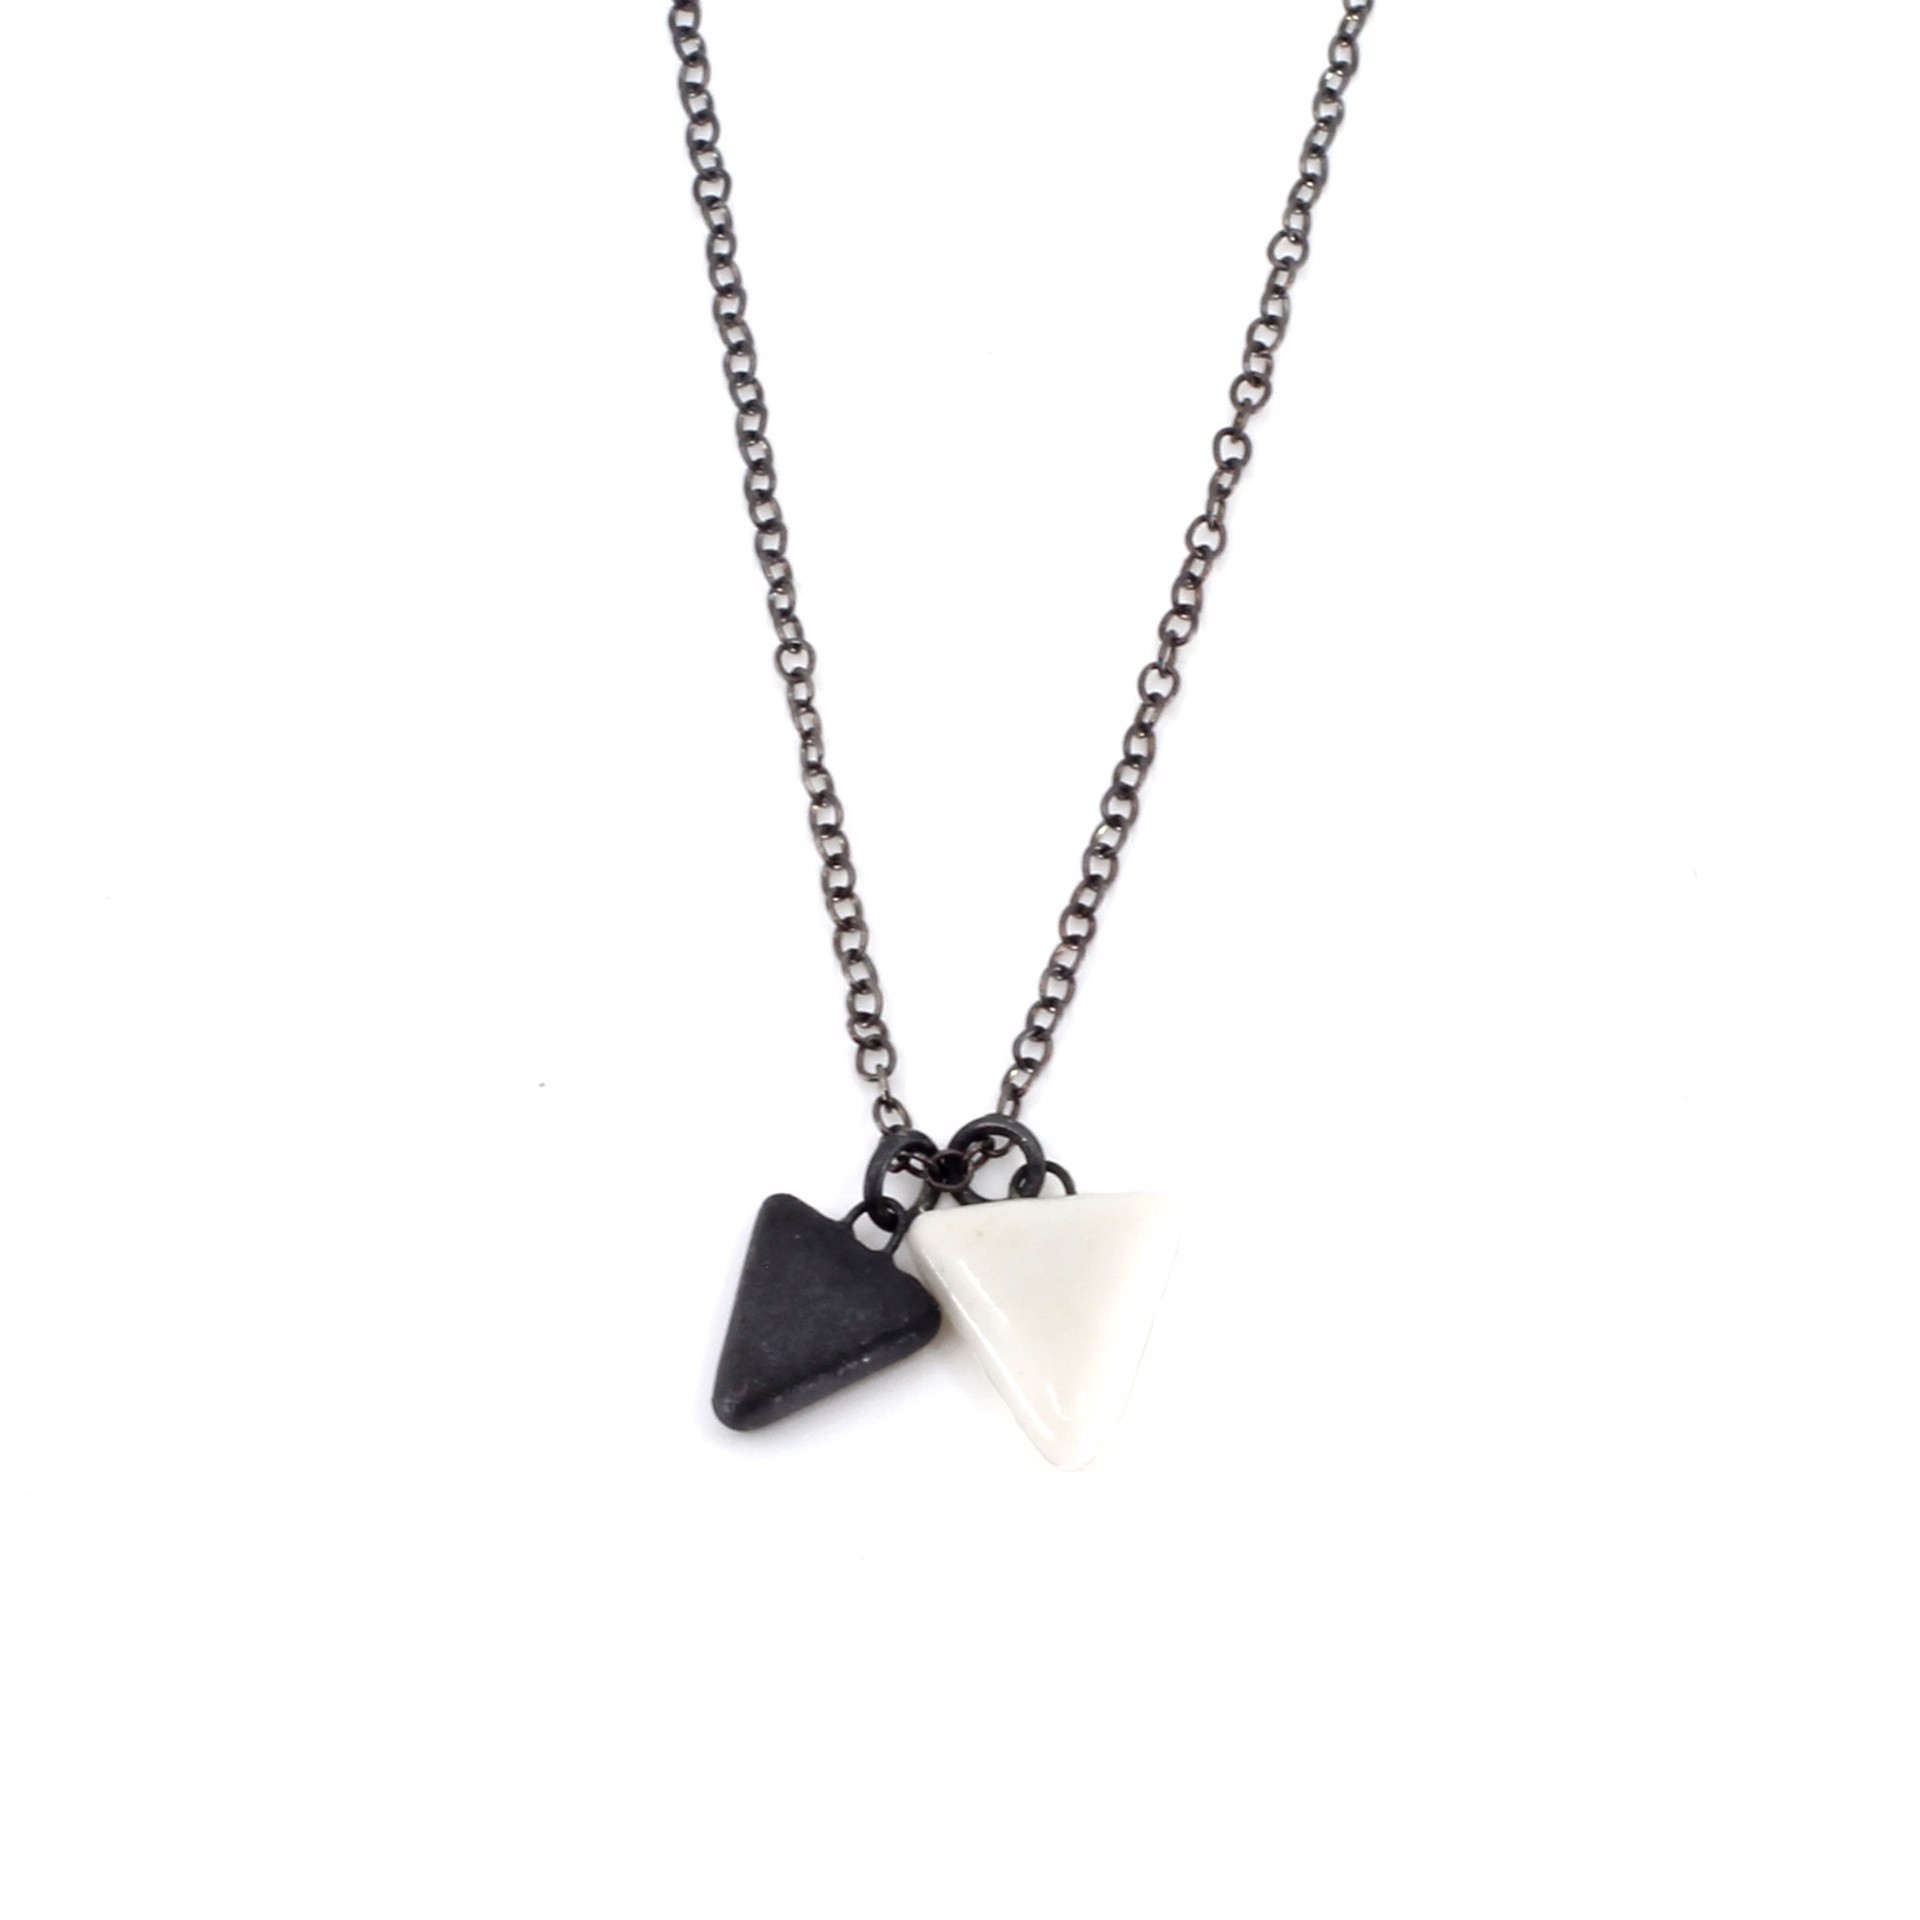 Triangle Charm Necklace by Jessica Wertz